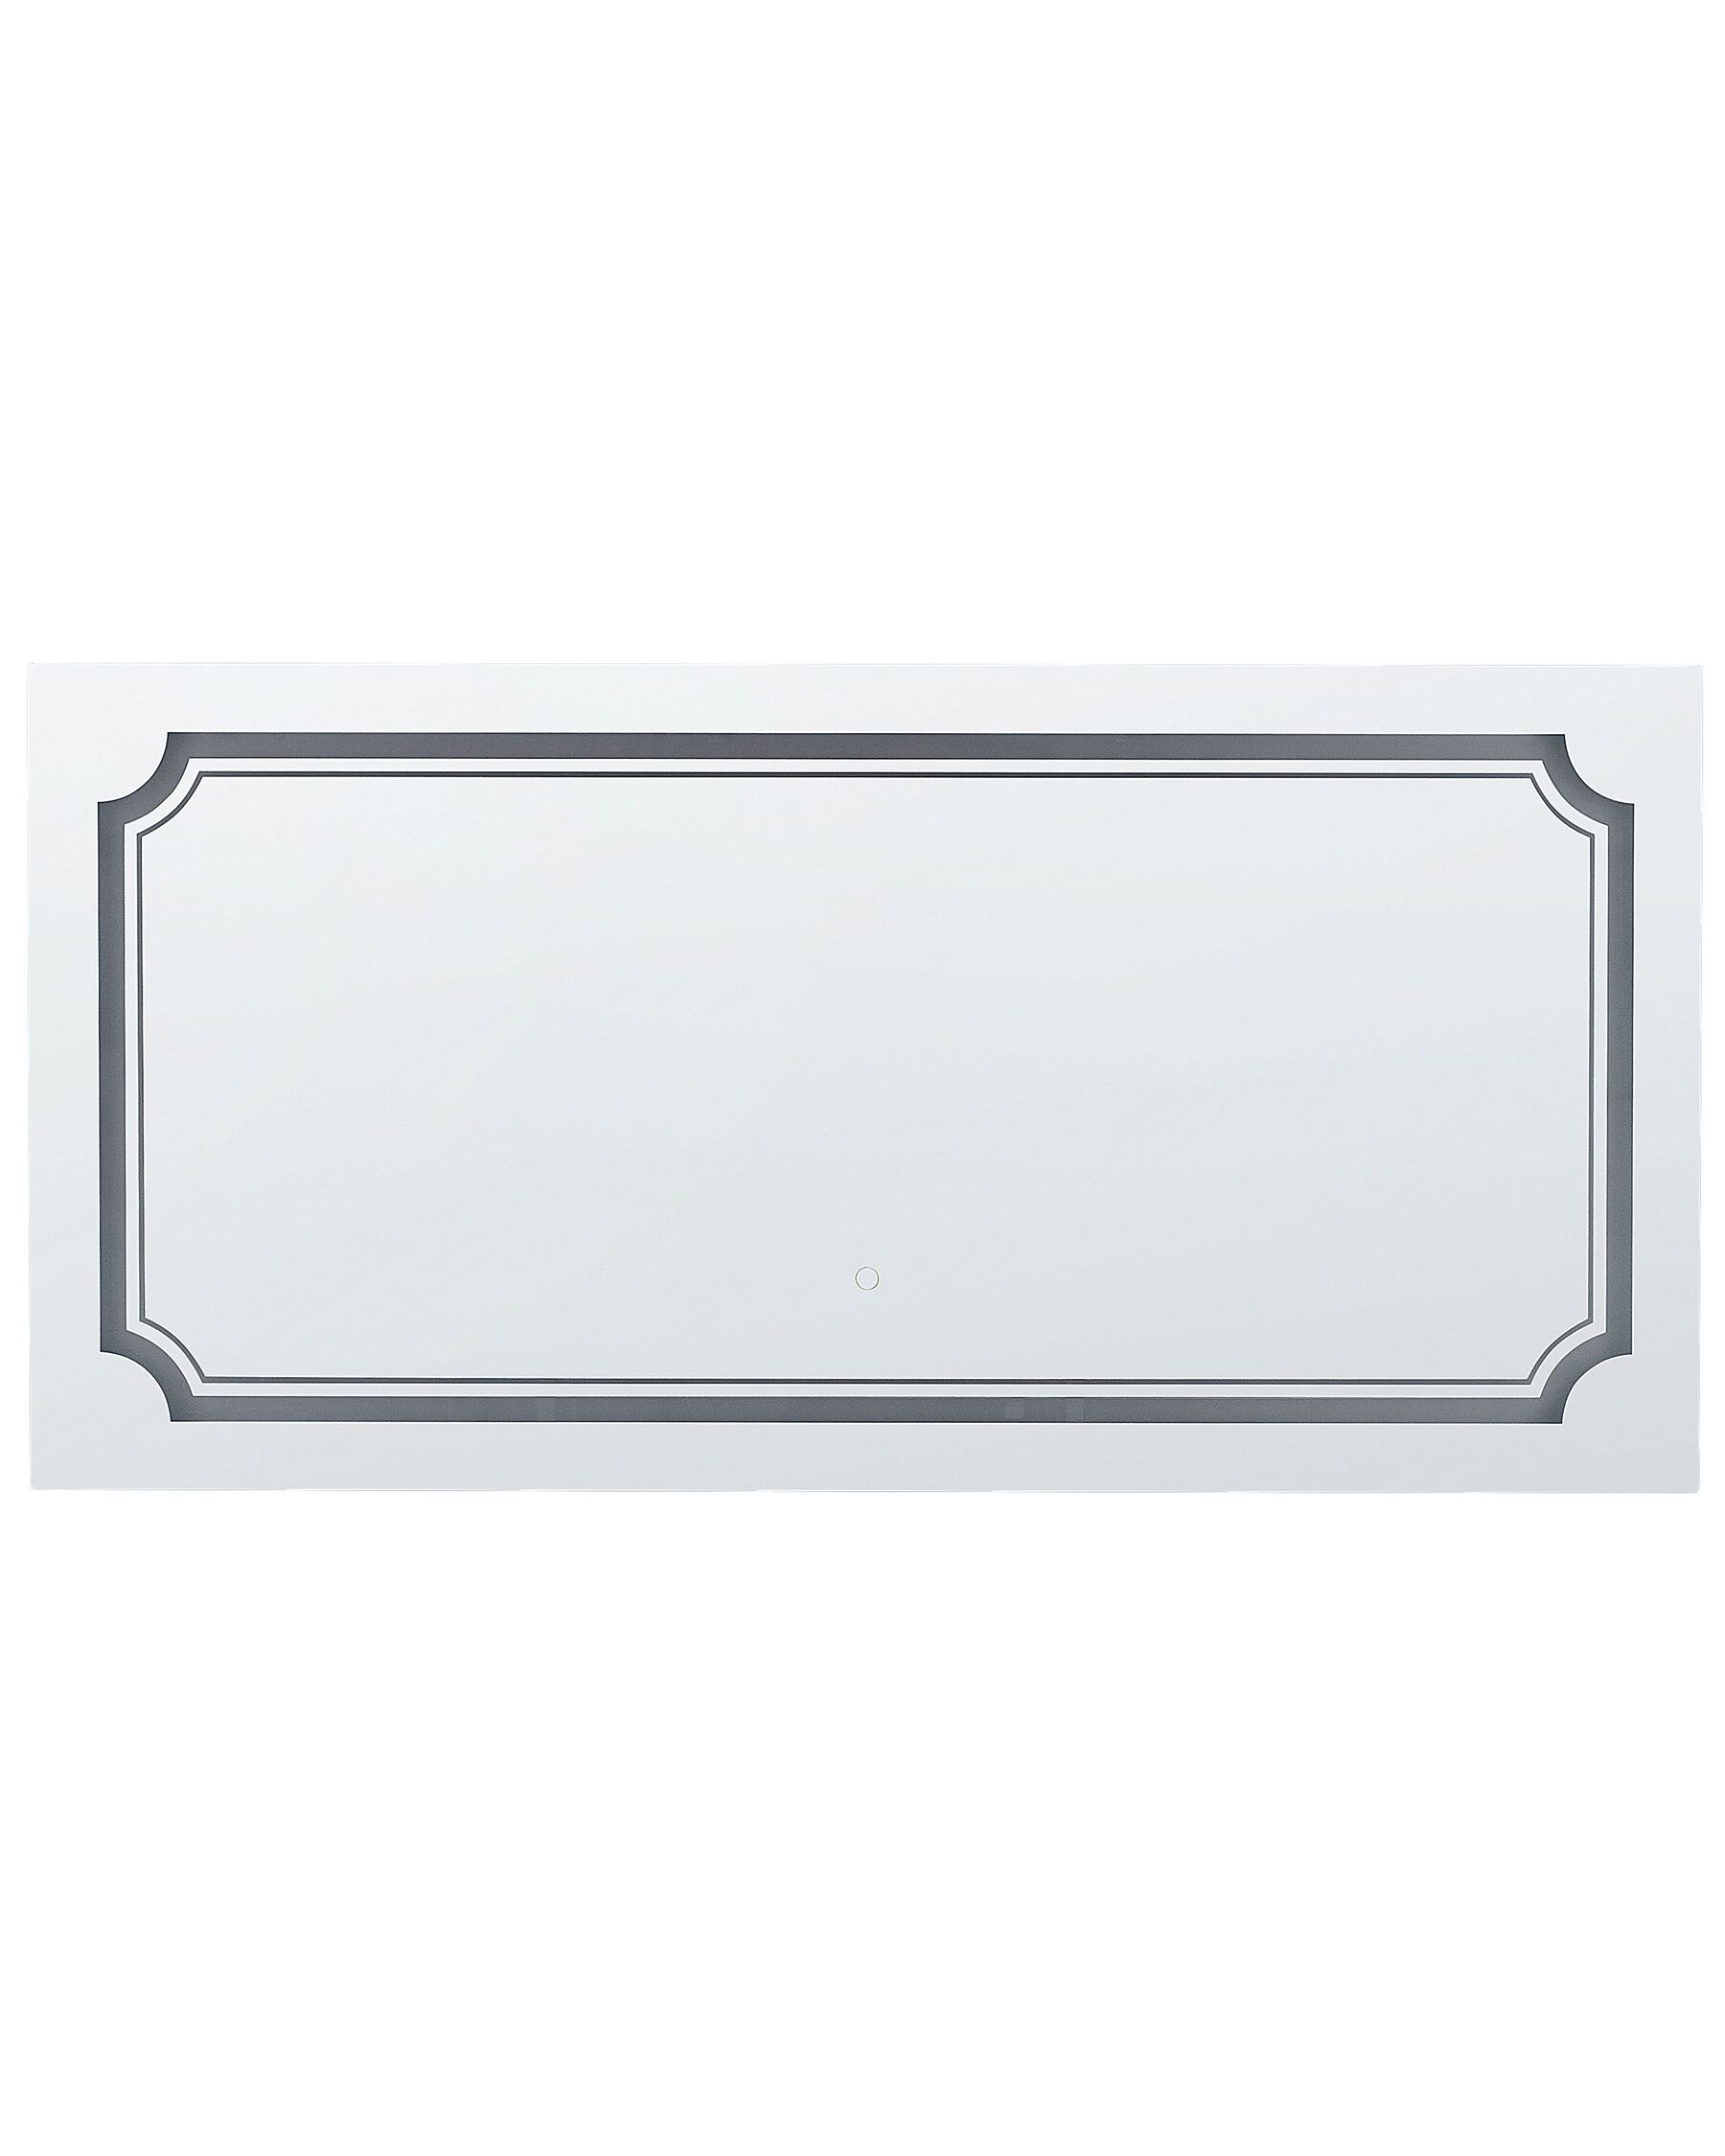 Badspiegel mit LED-Beleuchtung rechteckig 120 x 60 cm ARROMACHNES_837489